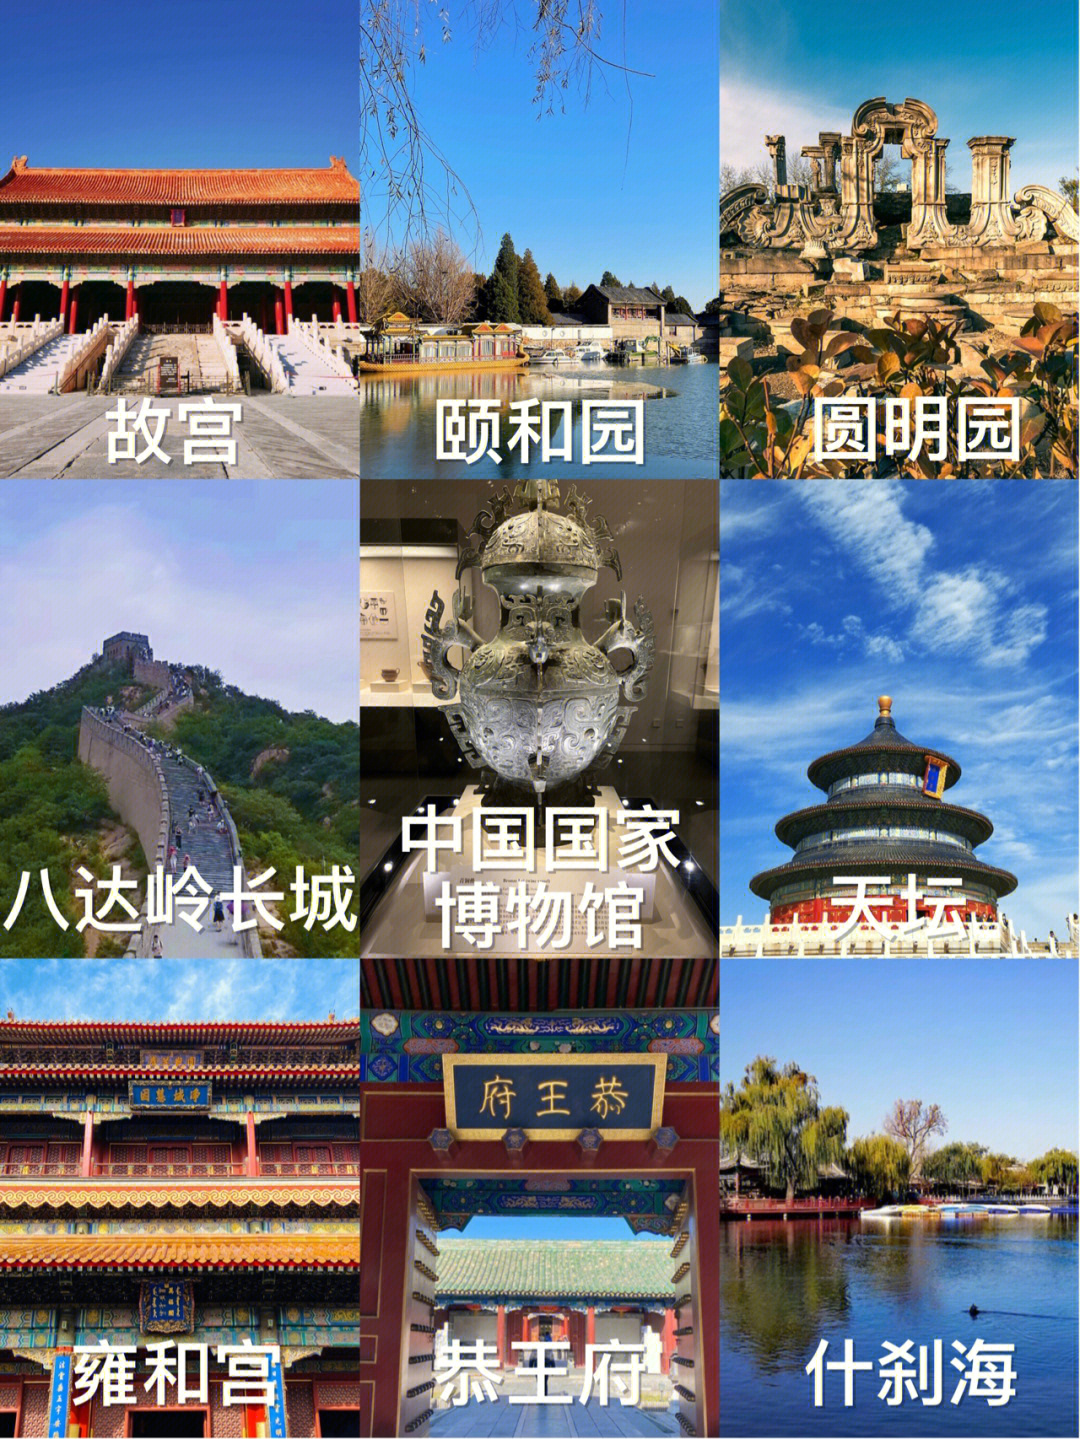 故宫六百年的紫禁城,到了北京一定要去的景点,非常受欢迎的故宫,一砖